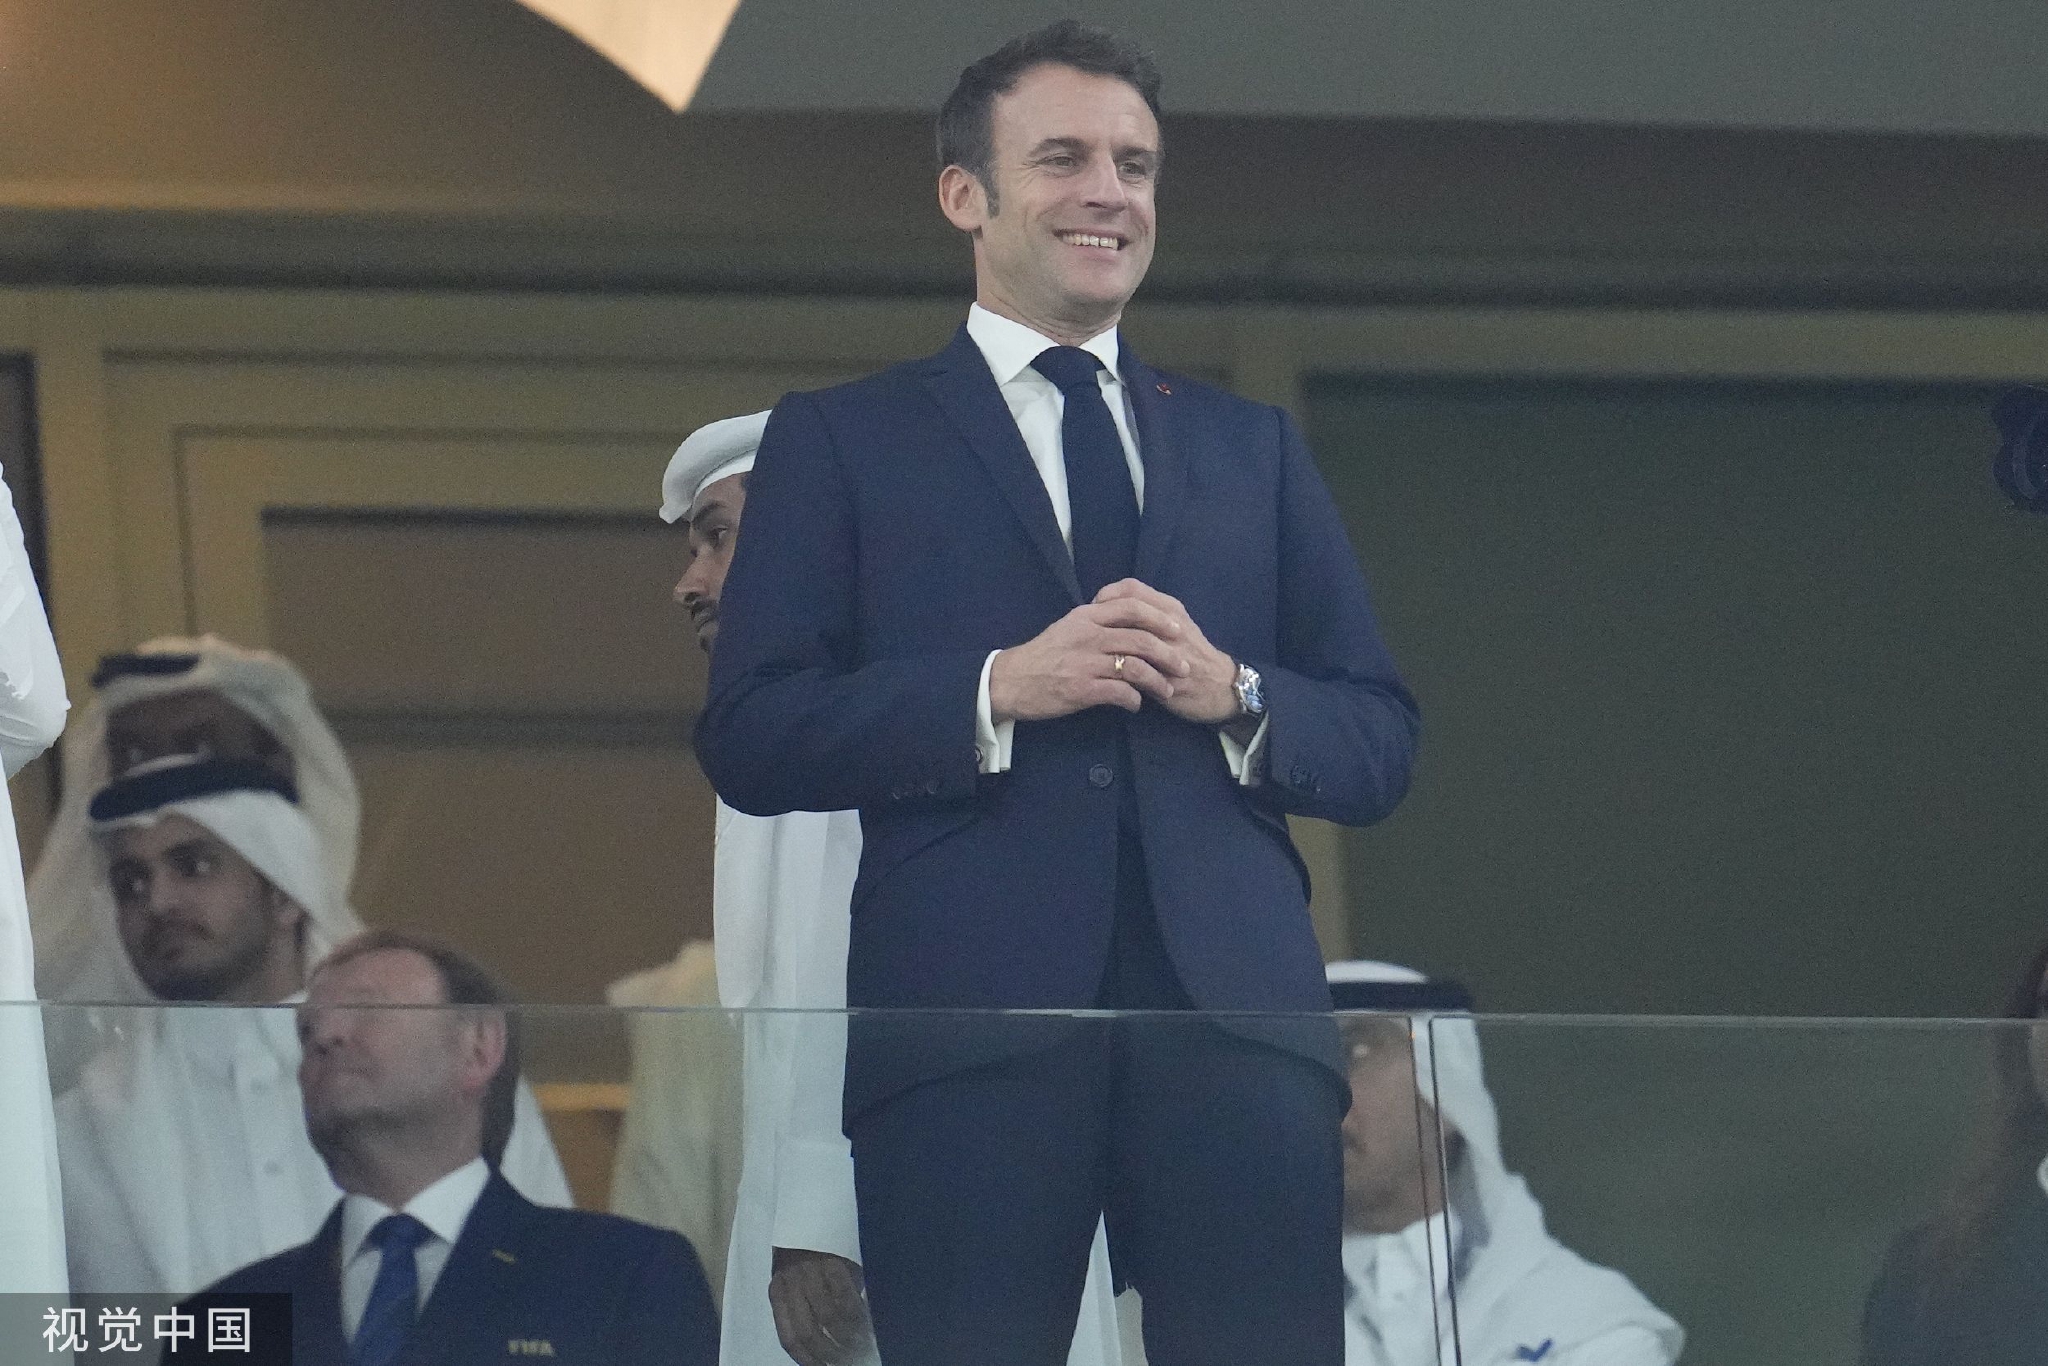 尽管法国队的现场球迷人数不及阿根廷队，但是法国总统马克龙依旧充满热情。